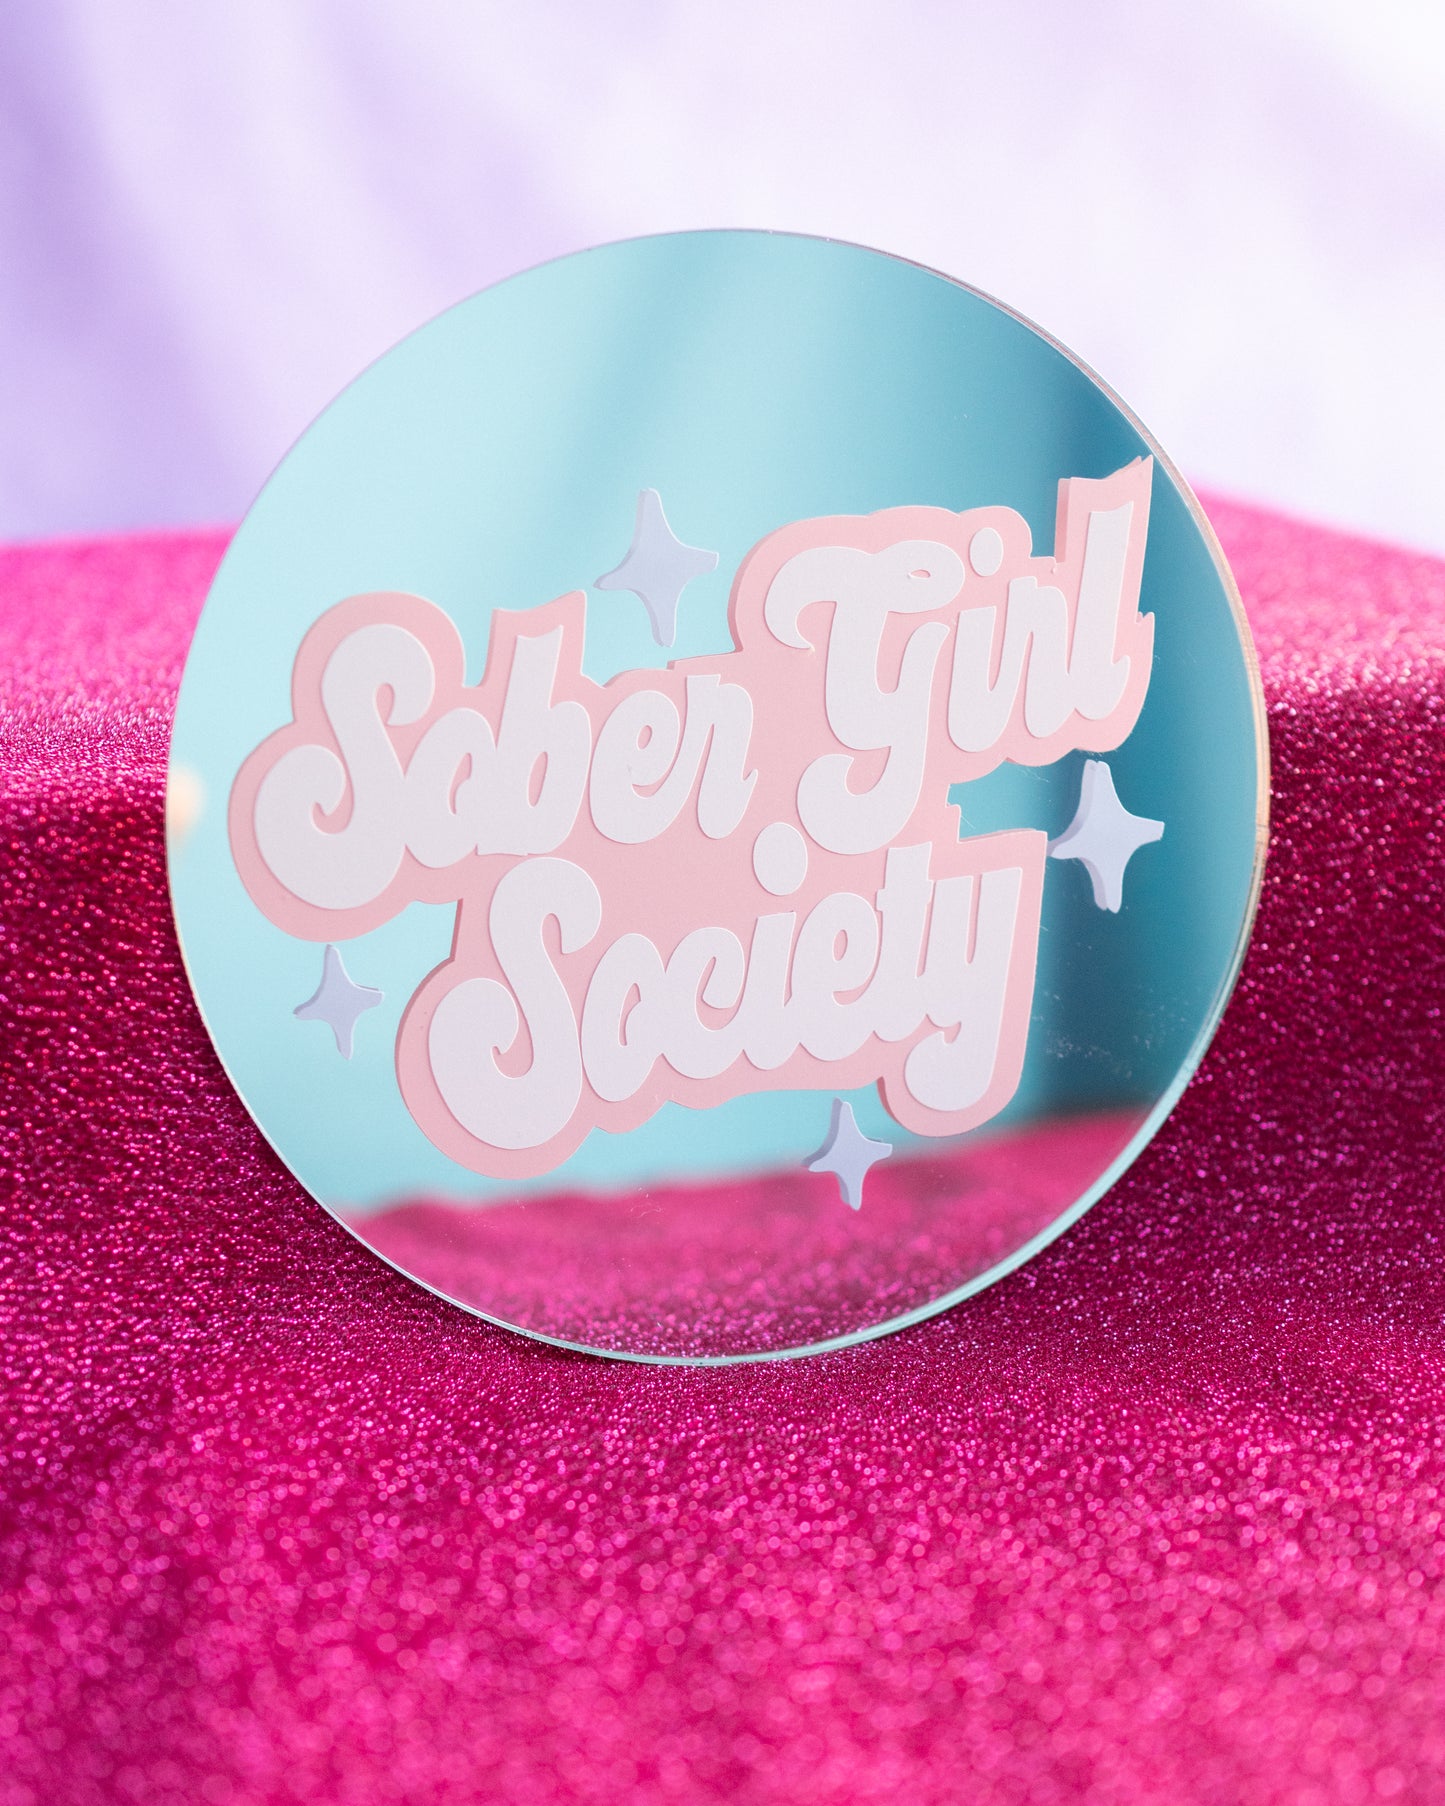 Sober Girl Society x Printed Weird - Sober Girl Mini Mirror